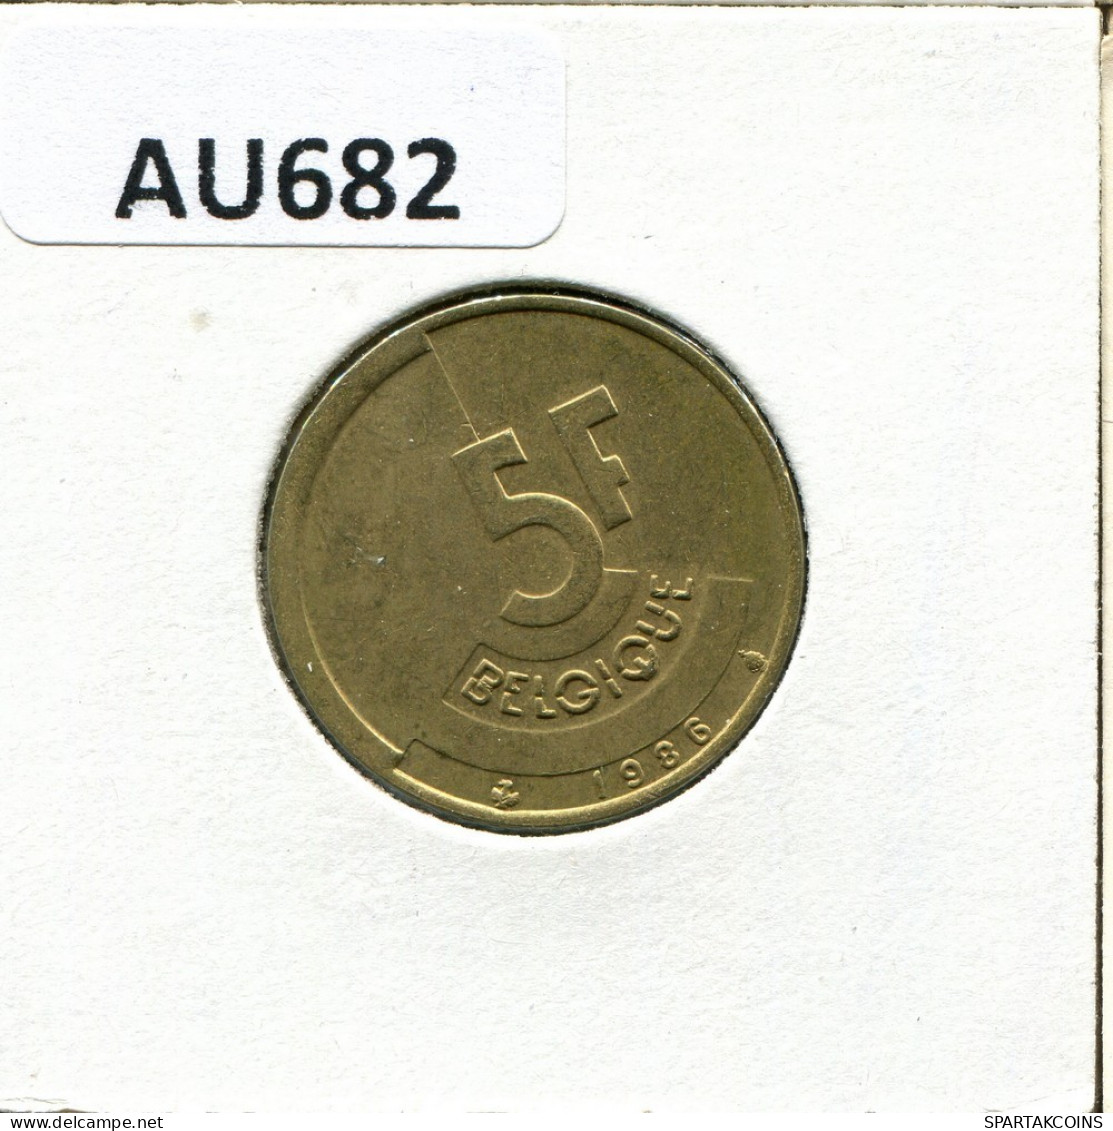 5 FRANCS 1986 FRENCH Text BELGIQUE BELGIUM Pièce #AU682.F.A - 5 Francs